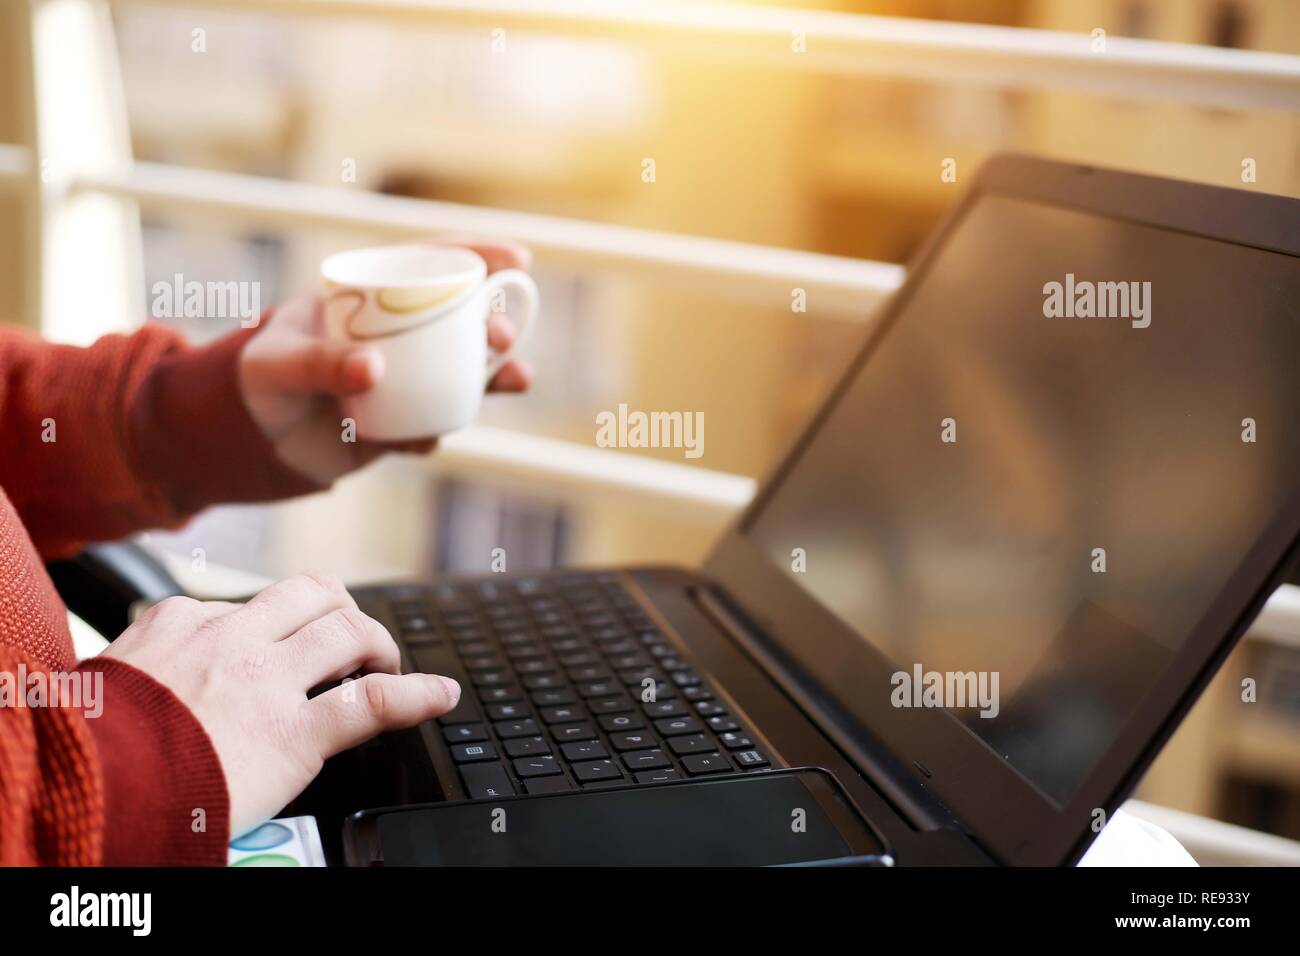 Boy est de travailler sur l'ordinateur portable avec holding cup dans la main. Banque D'Images